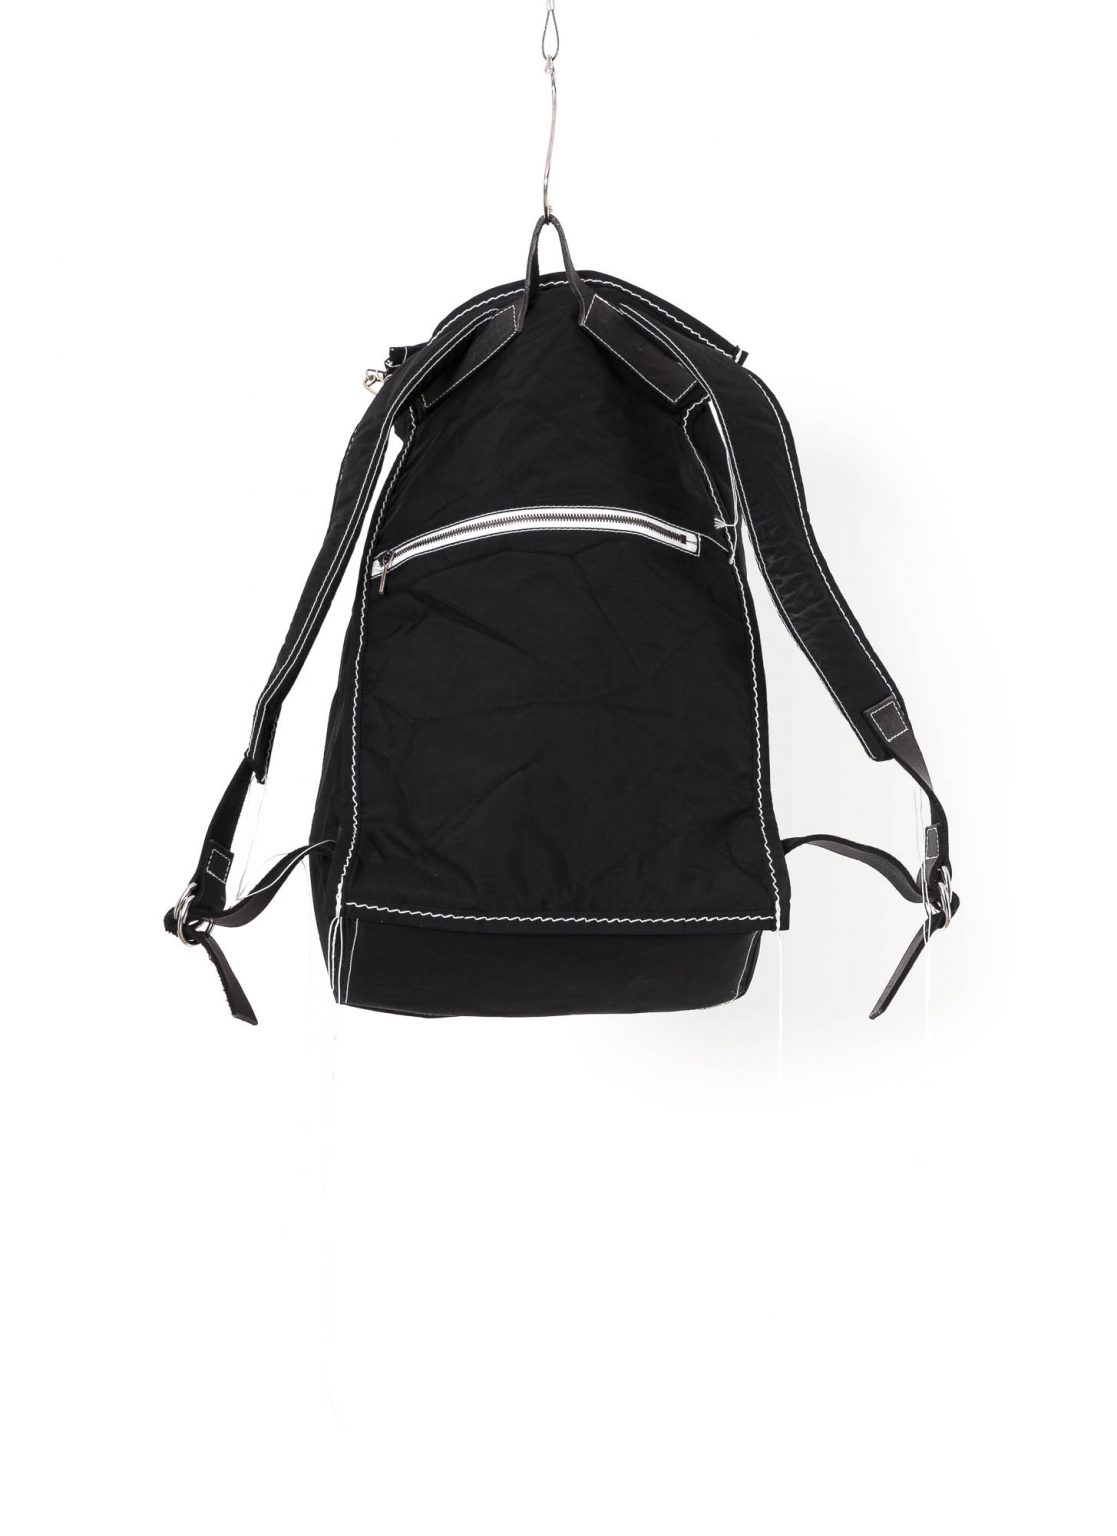 hide-m | TAICHI MURAKAMI Backpack Ver.4, black waterproof nylon